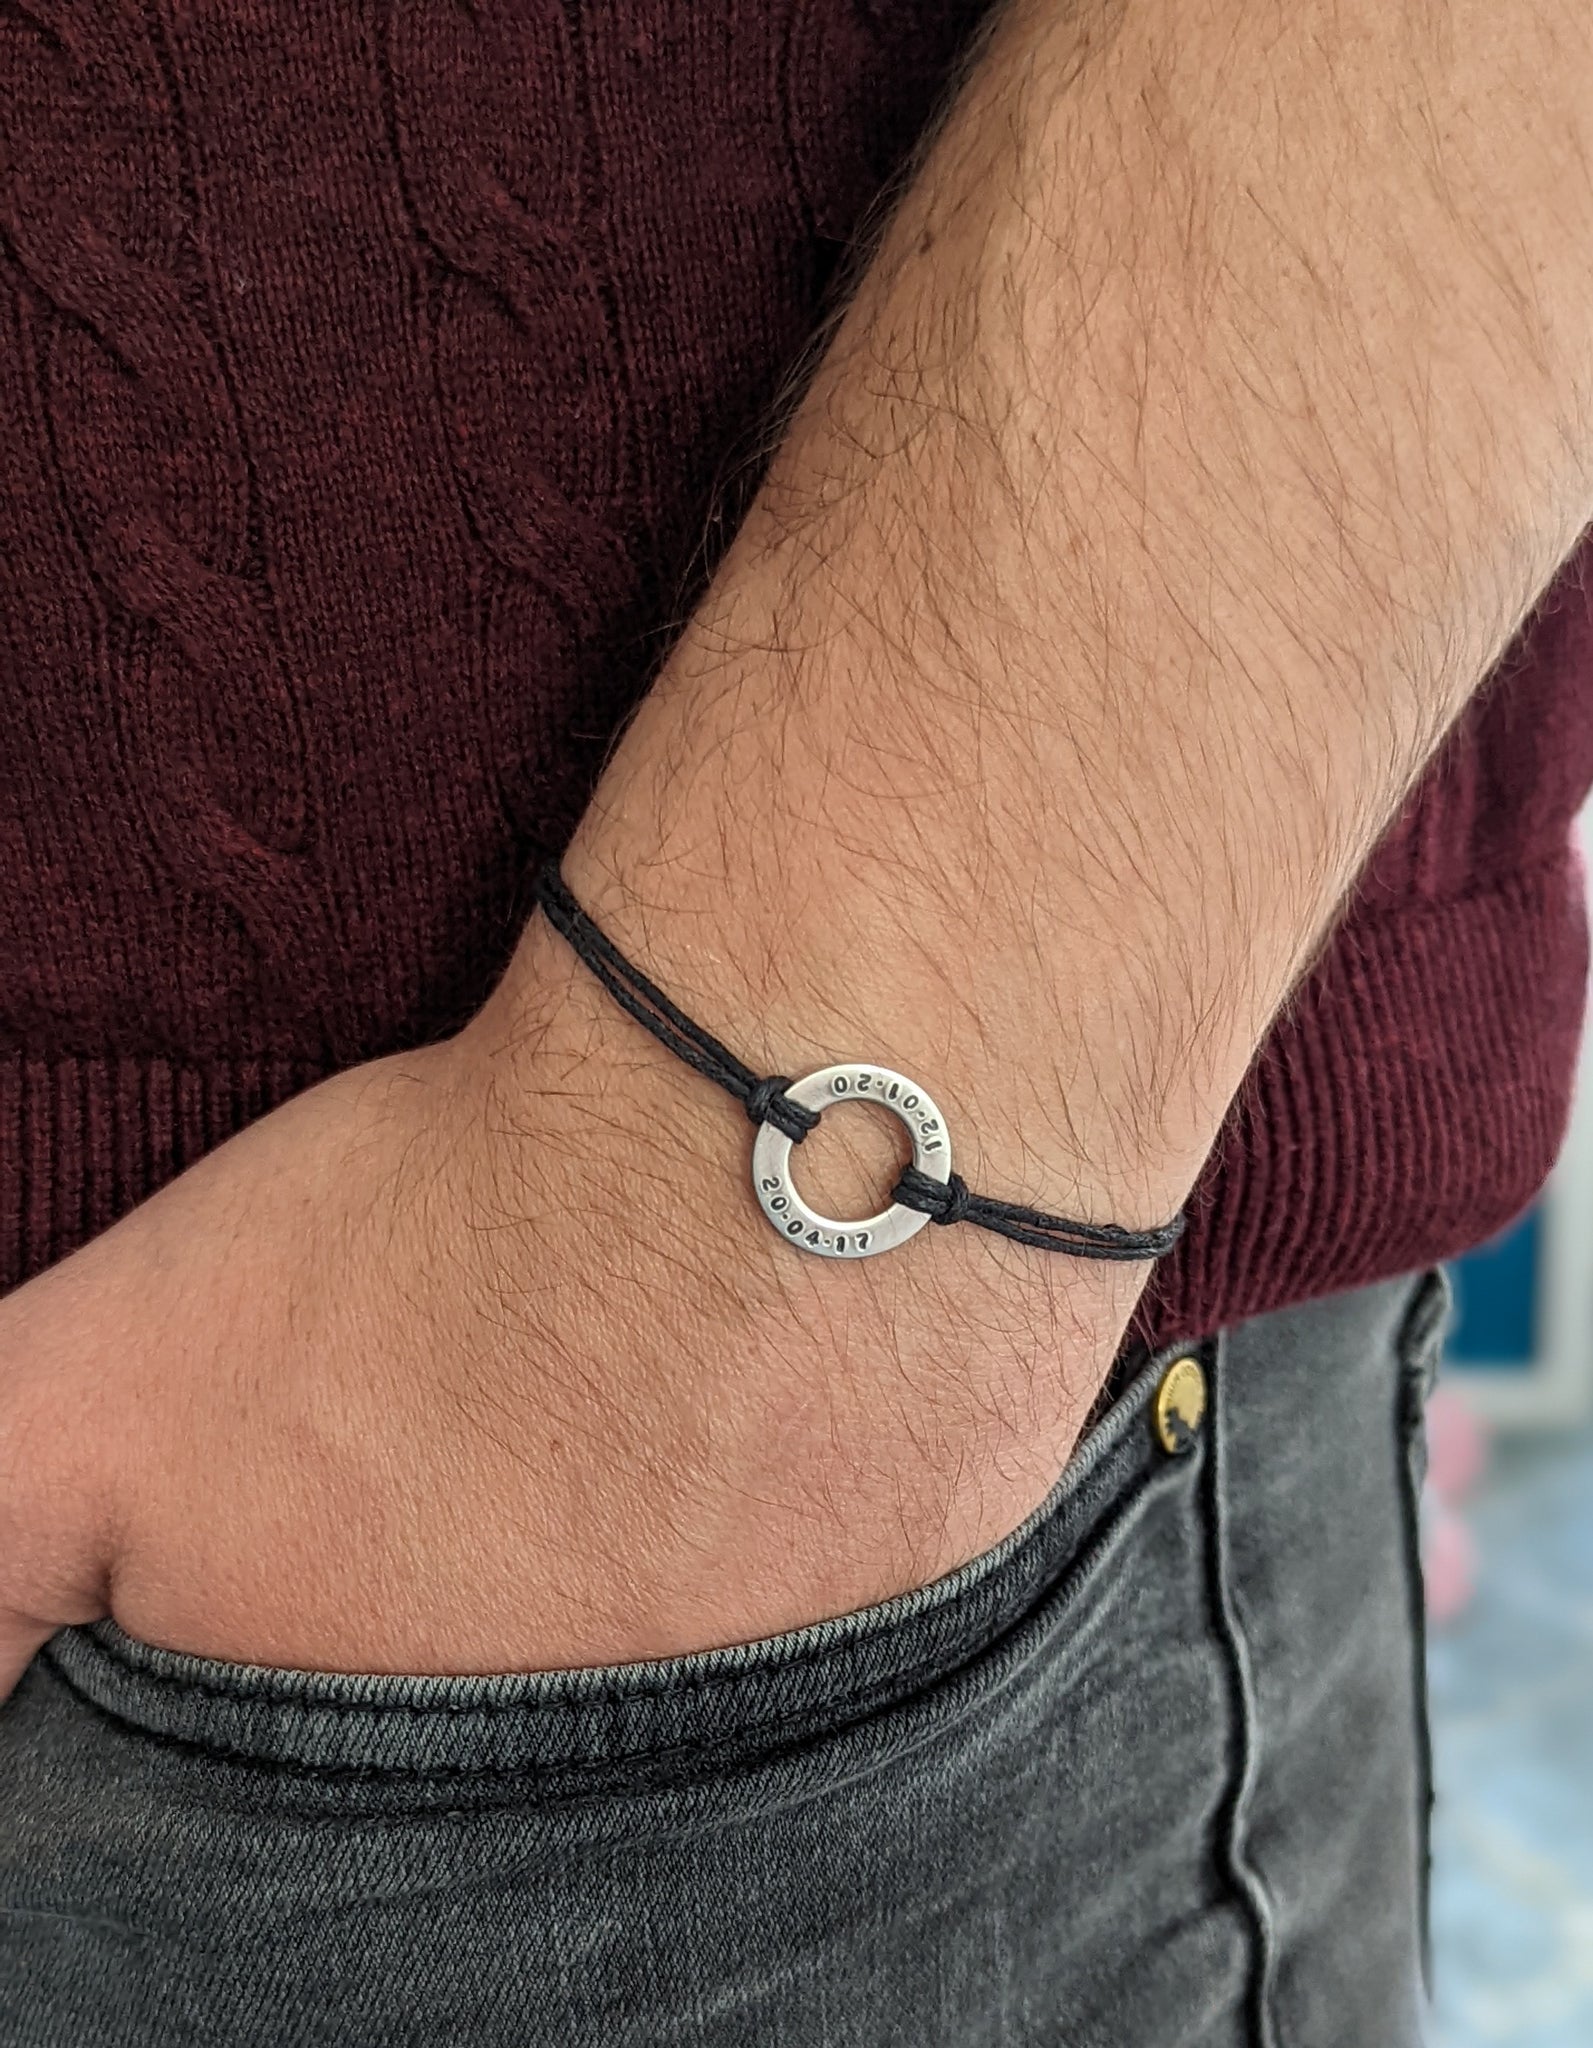 Pull String Bracelets | Adjustable Bracelets | Love Is Project